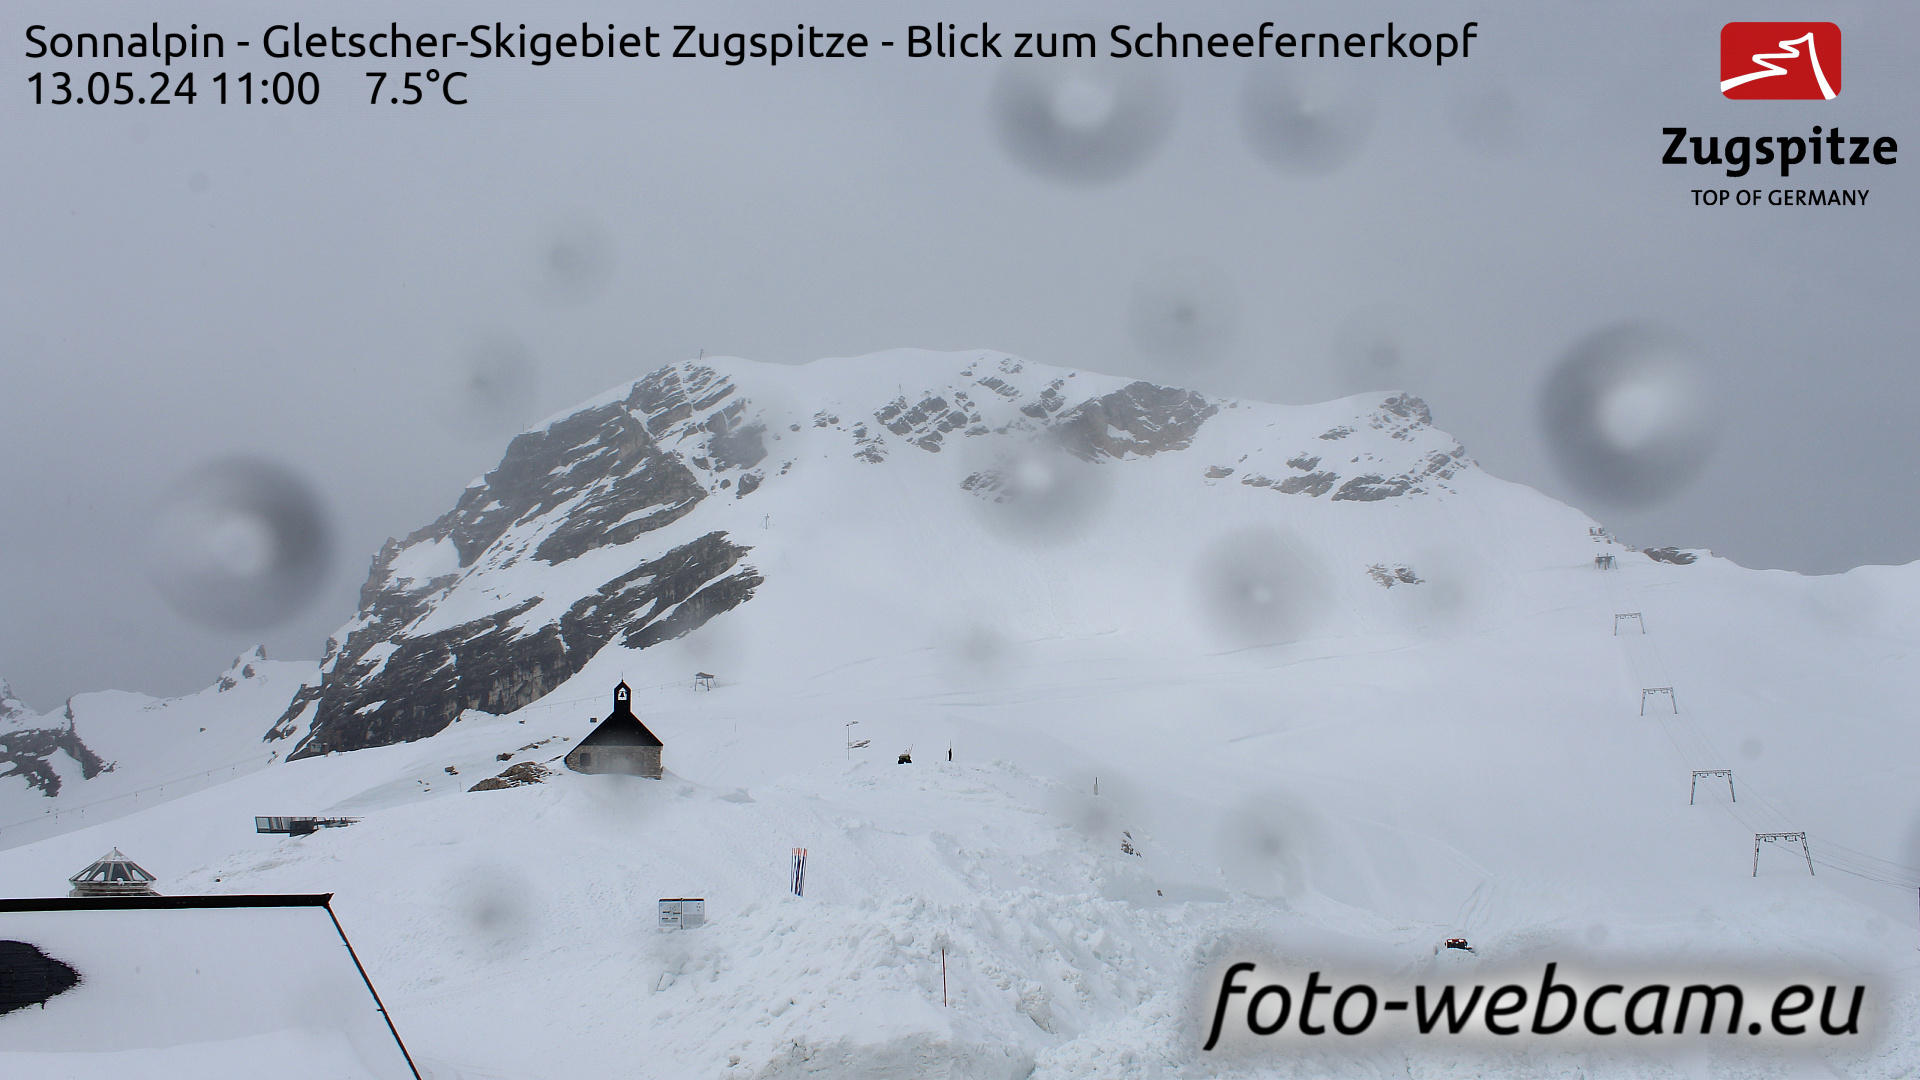 Zugspitze So. 11:24